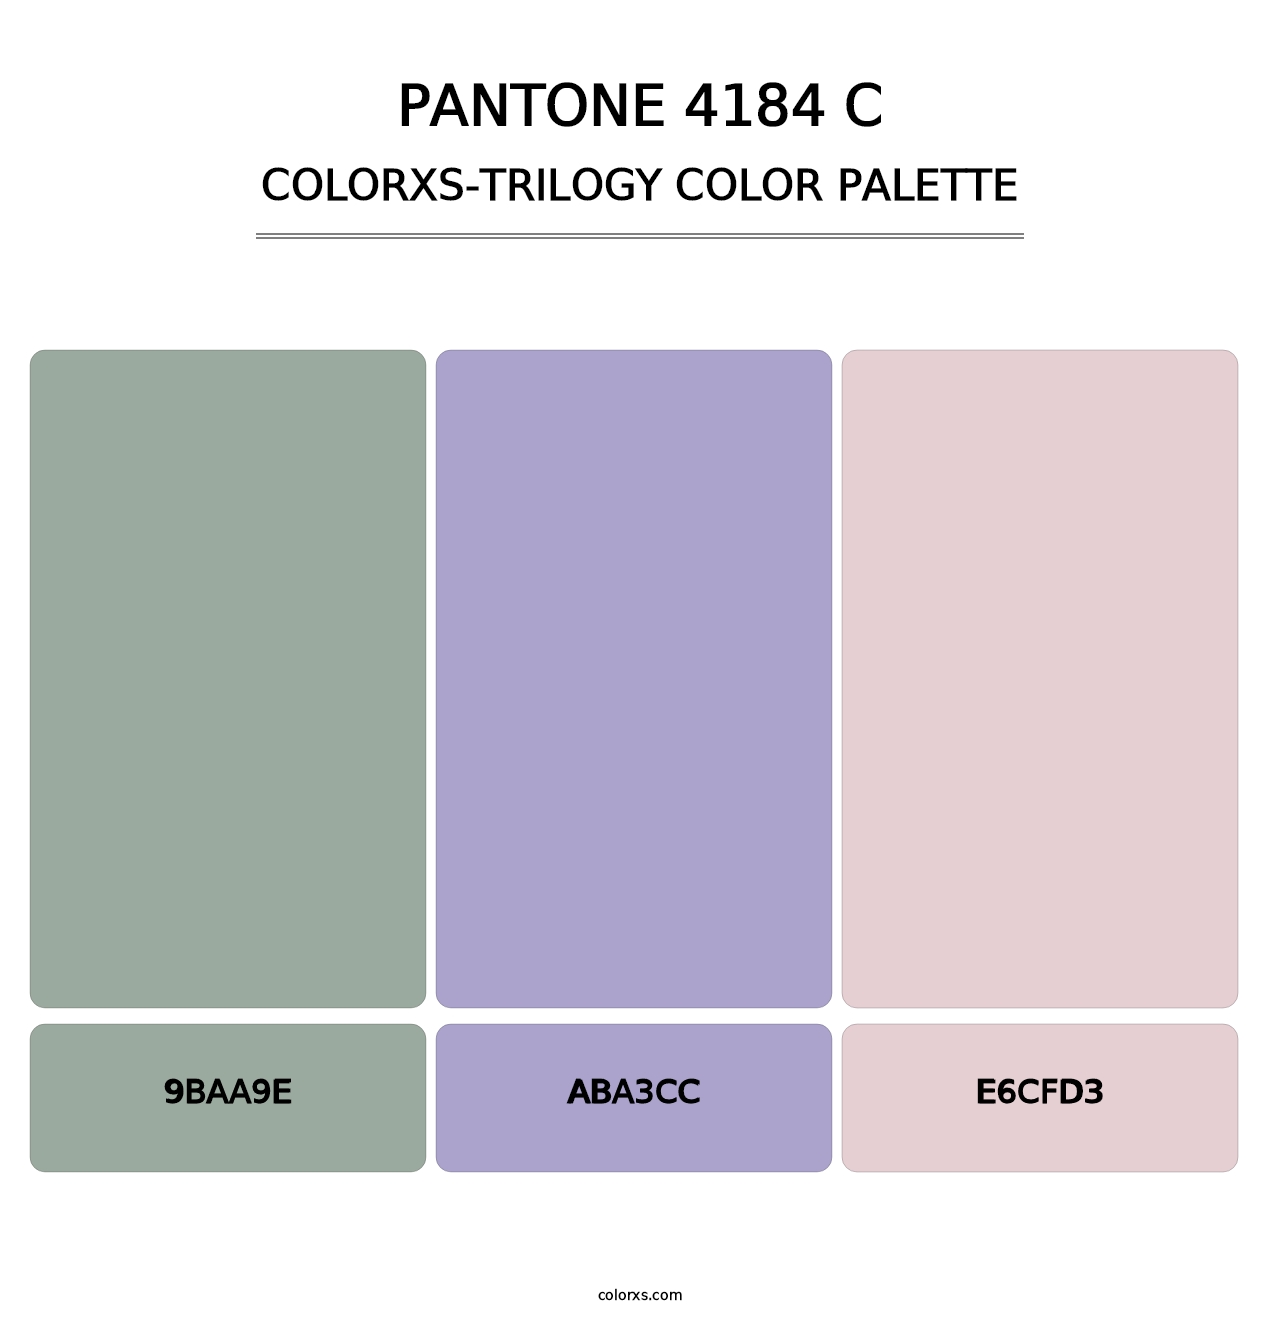 PANTONE 4184 C - Colorxs Trilogy Palette